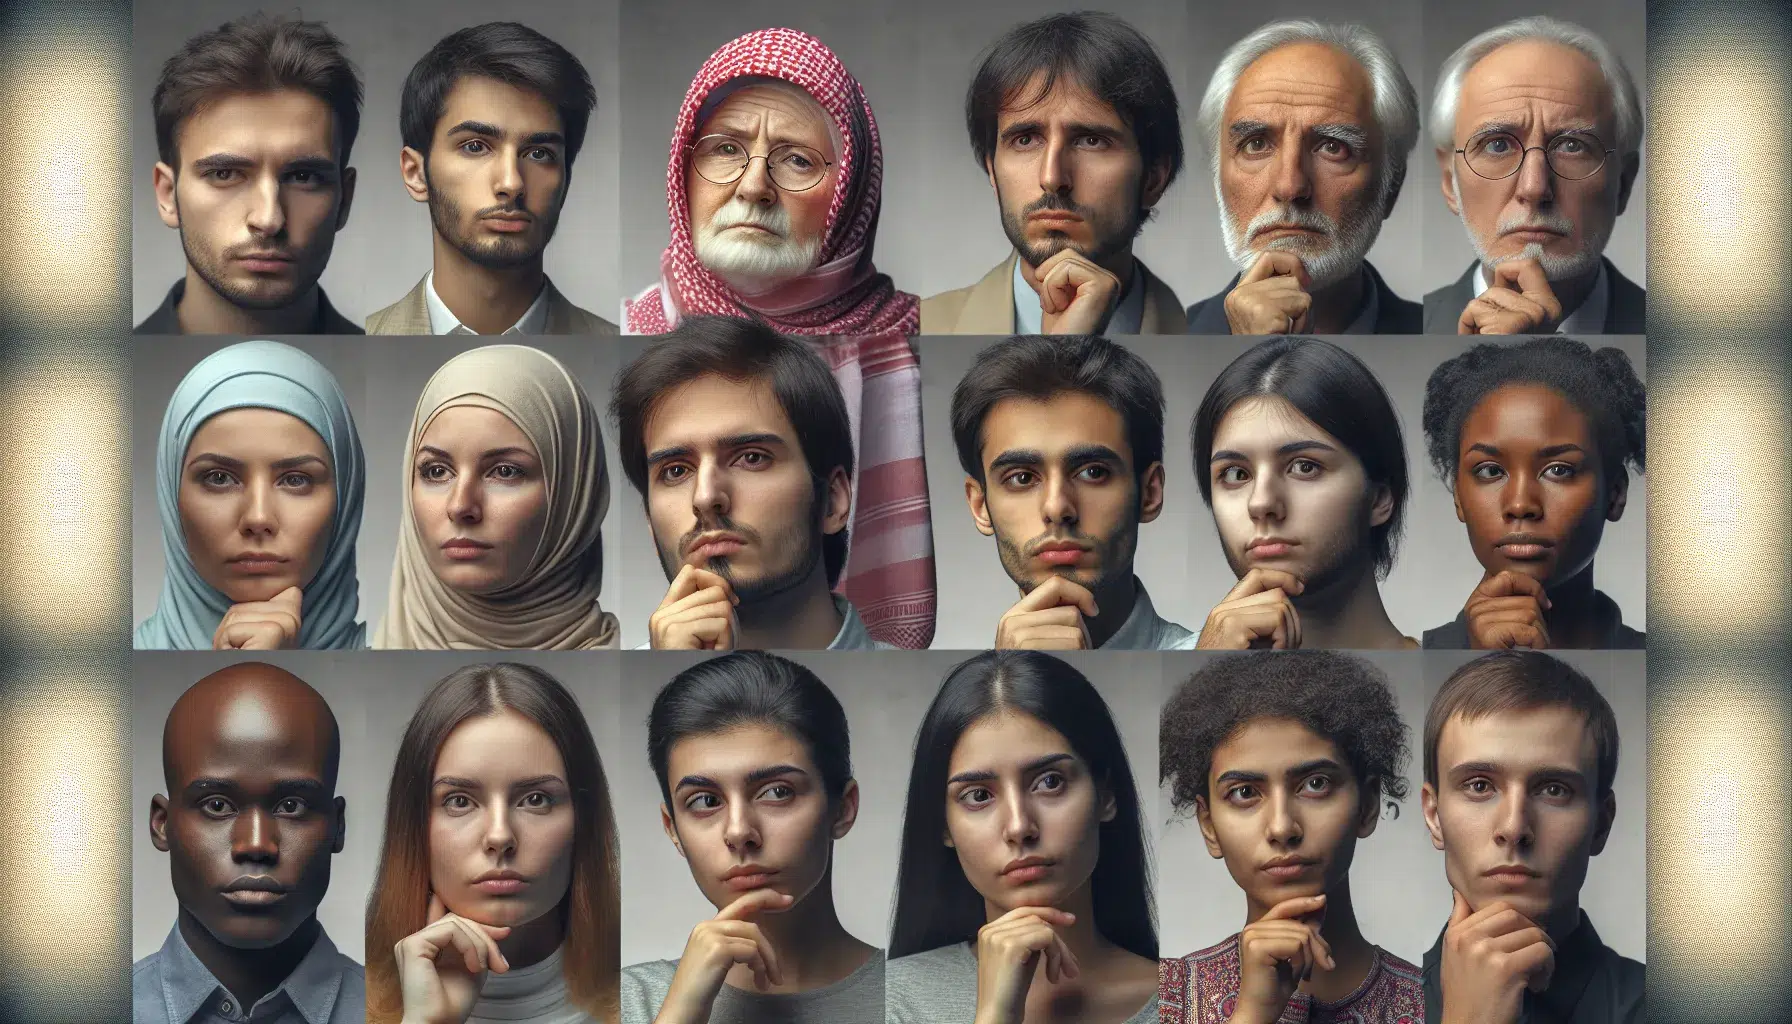 'Una imagen que representa la diversidad de opiniones y pensamientos de las personas agnósticas, mostrando un grupo variado de individuos con expresiones reflexivas y curiosas'.